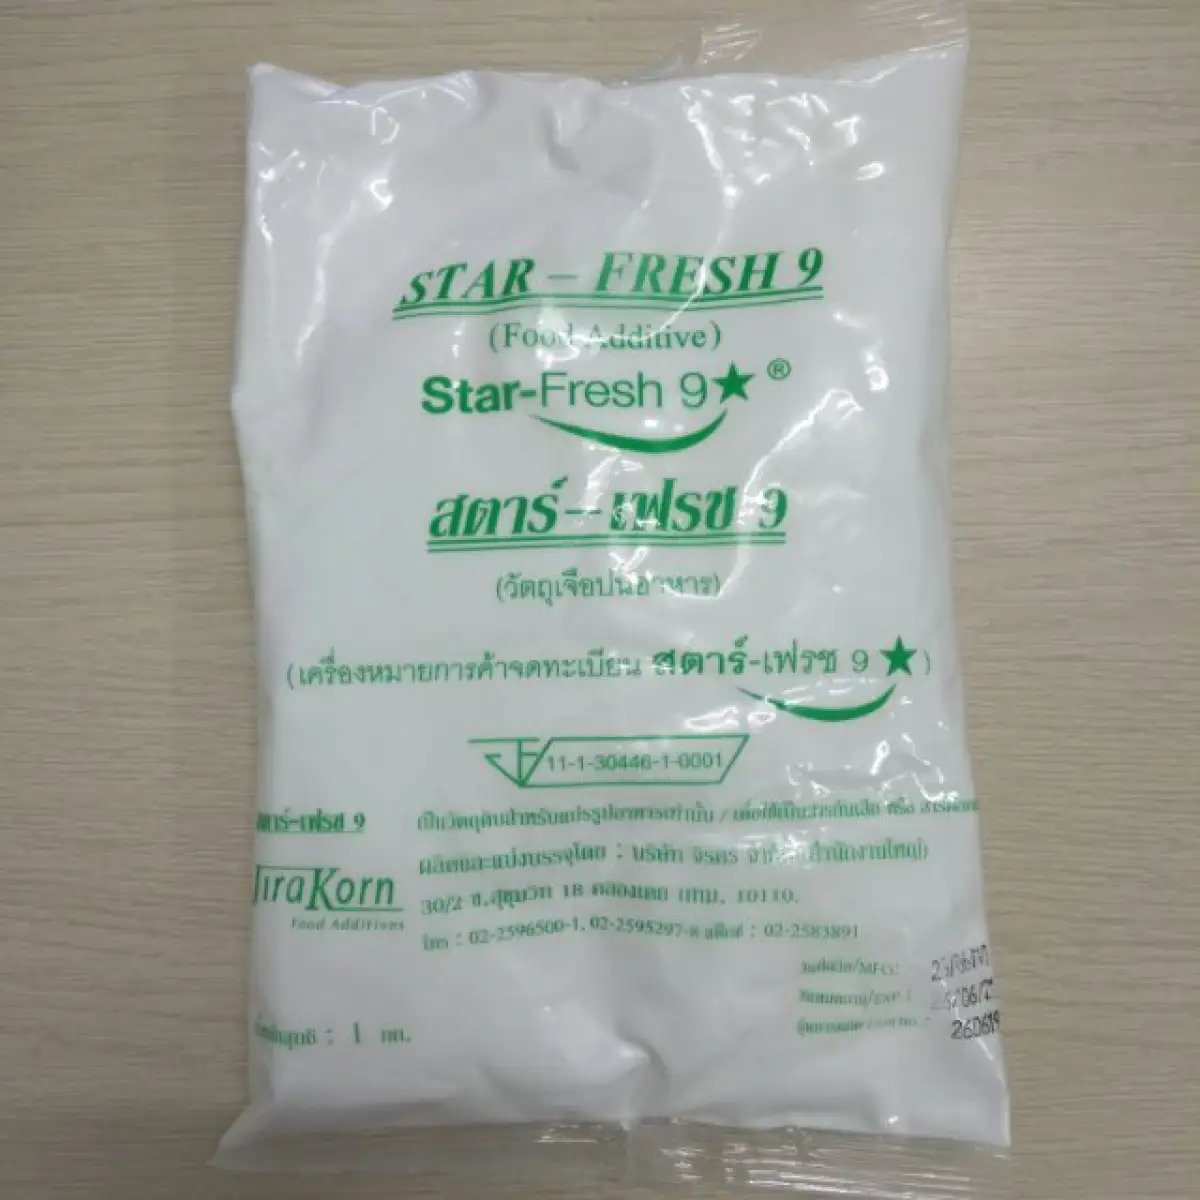 chất tẩy trắng dùng trong thực phẩm an toàn STAR FRESH 9 | Lazada.vn